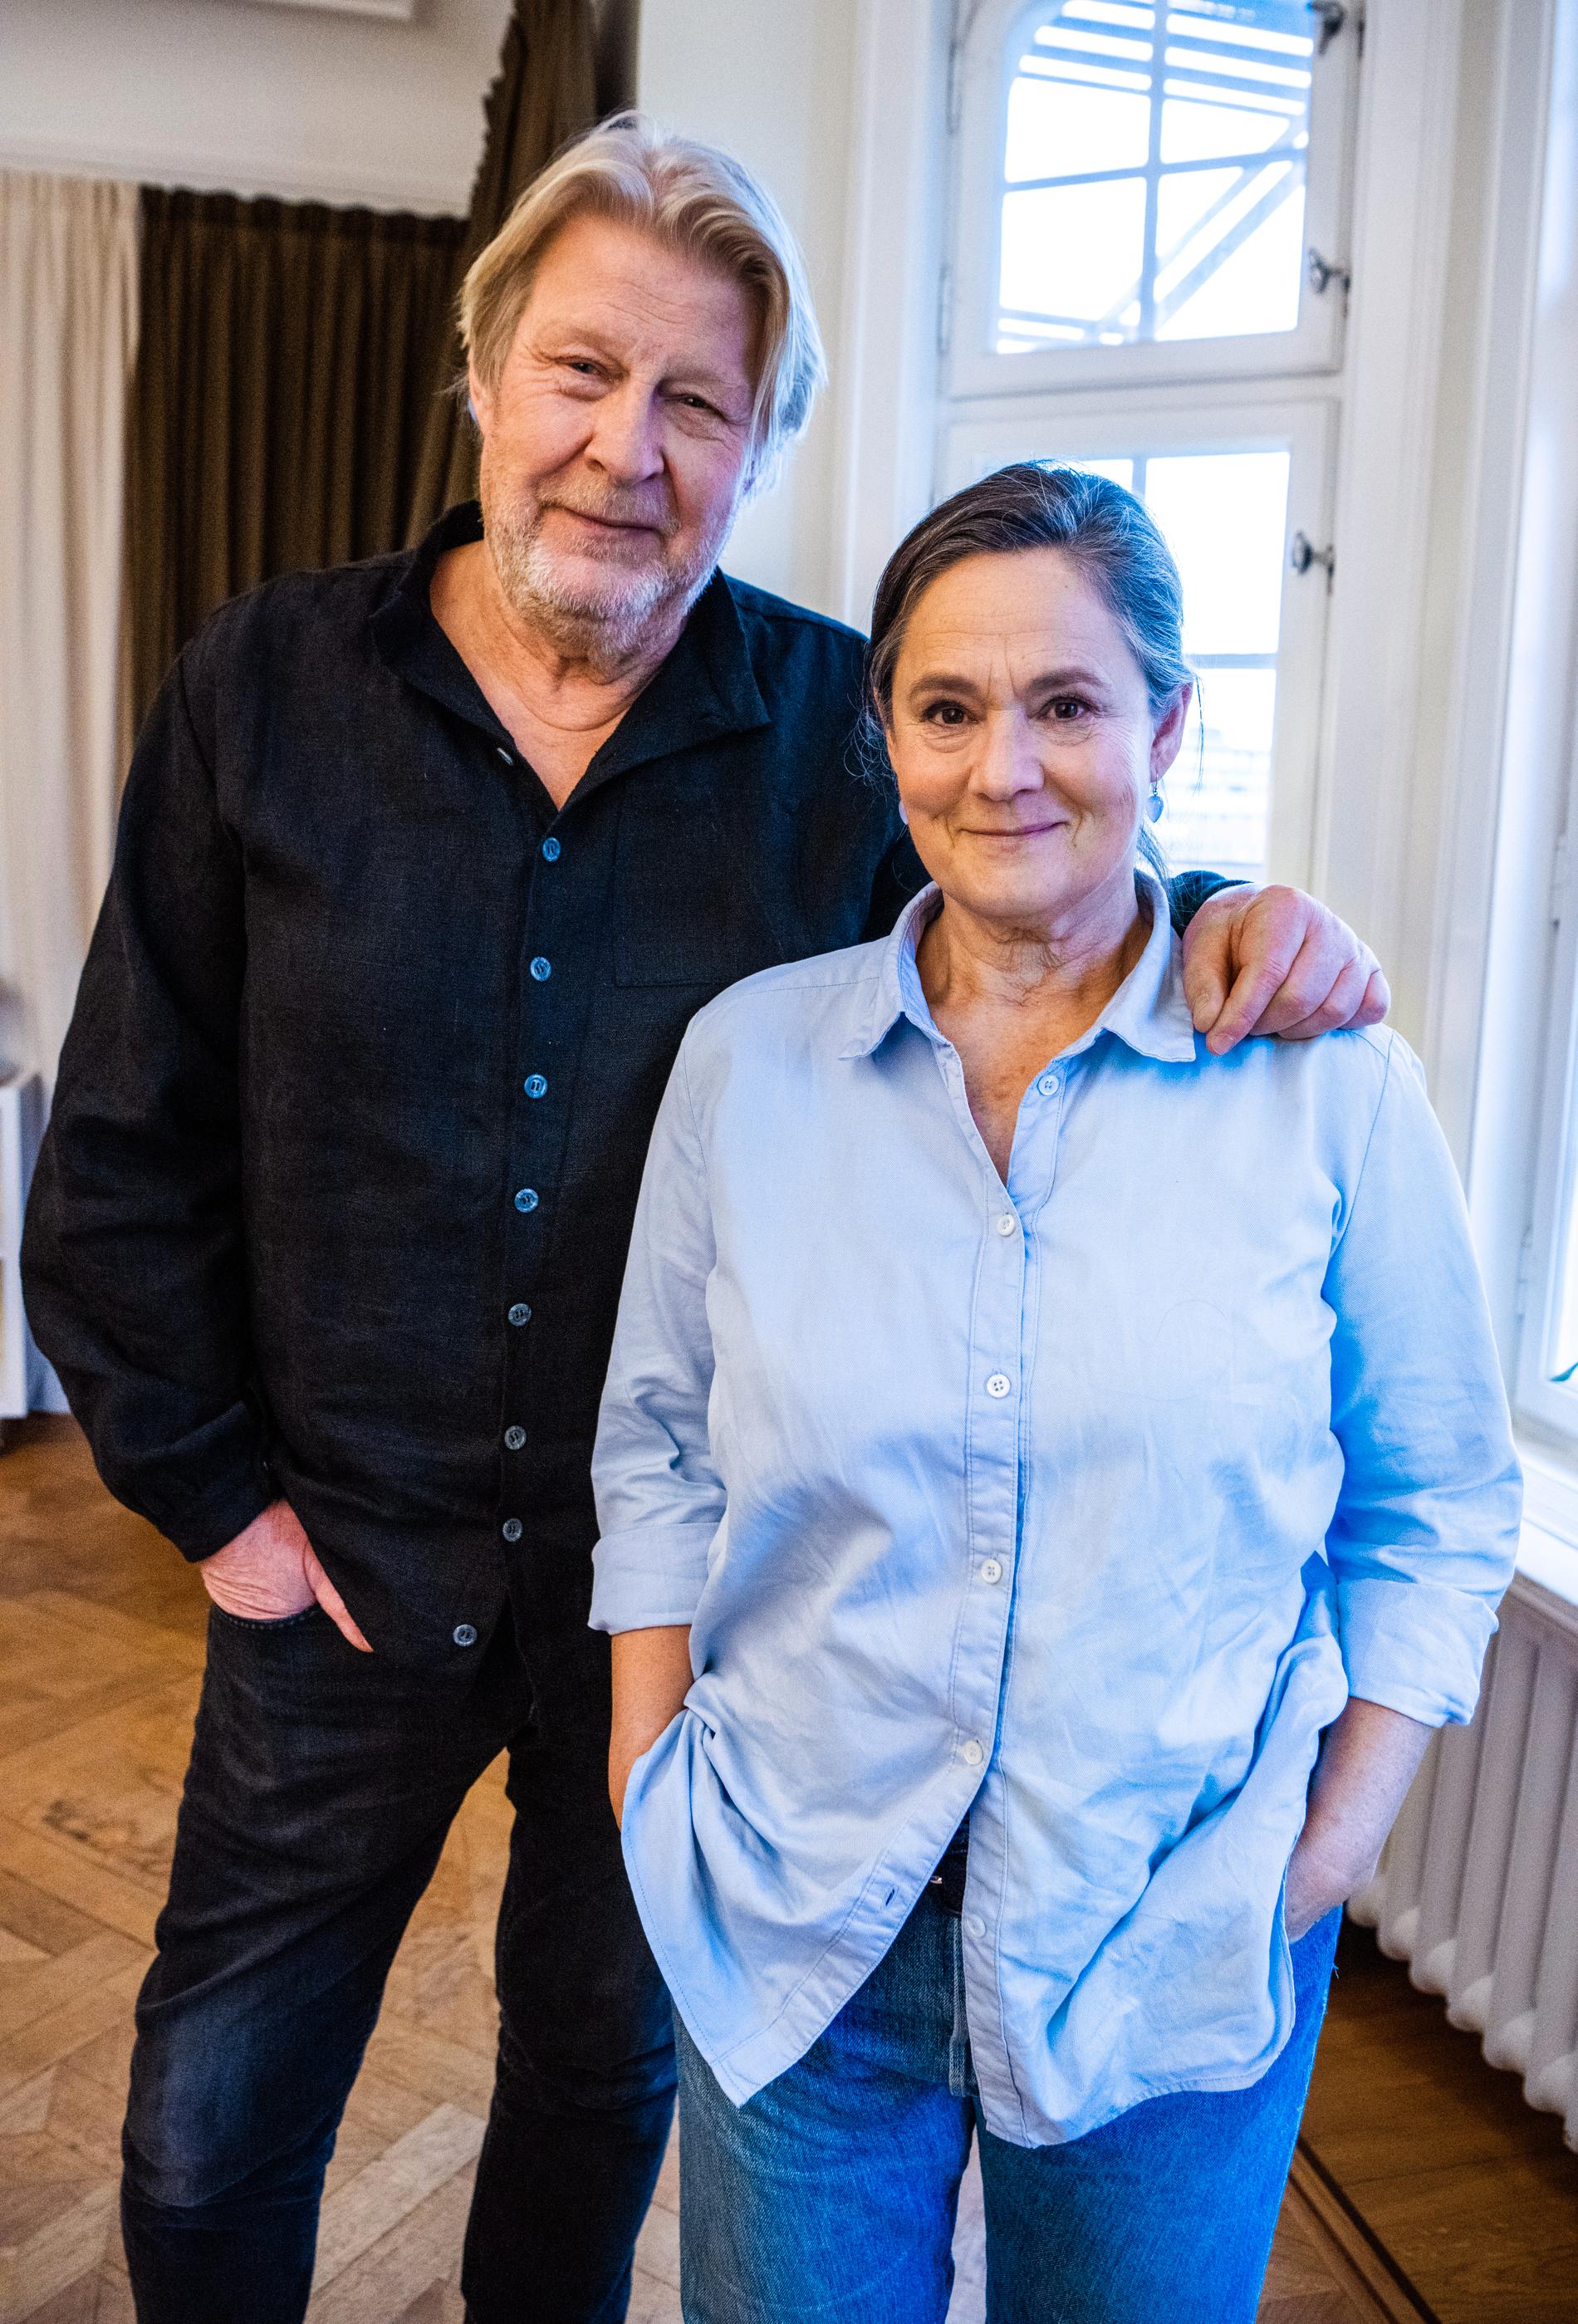 Rolf Lassgård och Pernilla August spelar huvudrollerna i "Händelser vid vatten".